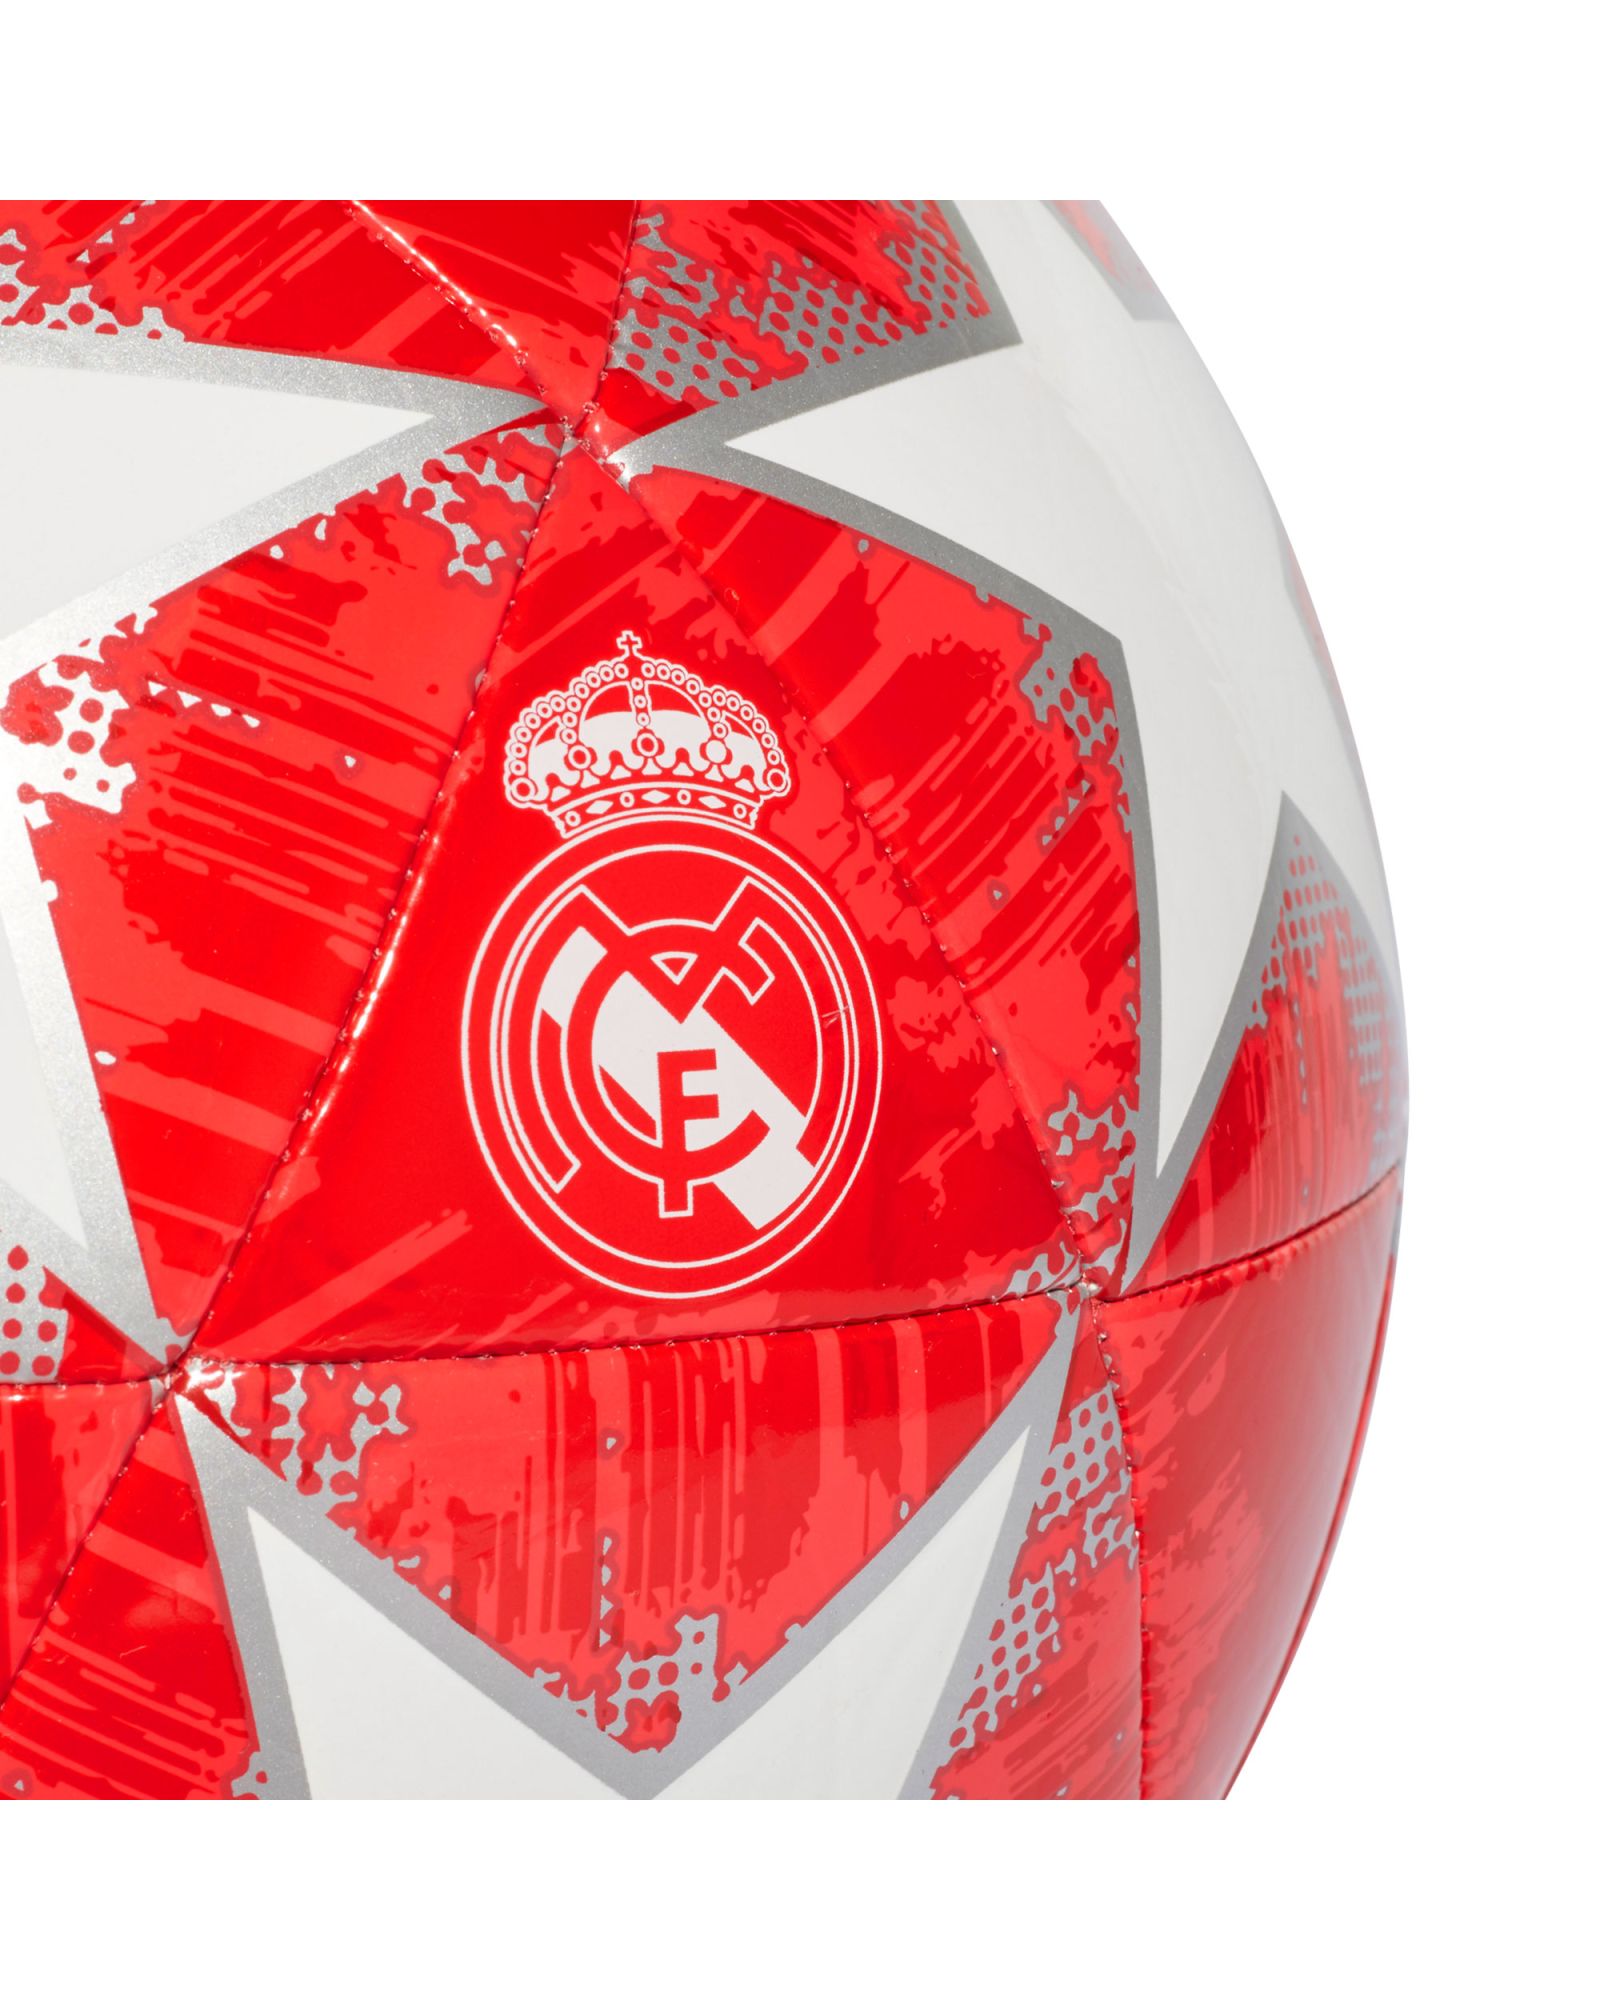 Balón de Fútbol 11 Finale 18 Capitano Real Madrid UCL 2018/2019 Blanco Rojo - Fútbol Factory